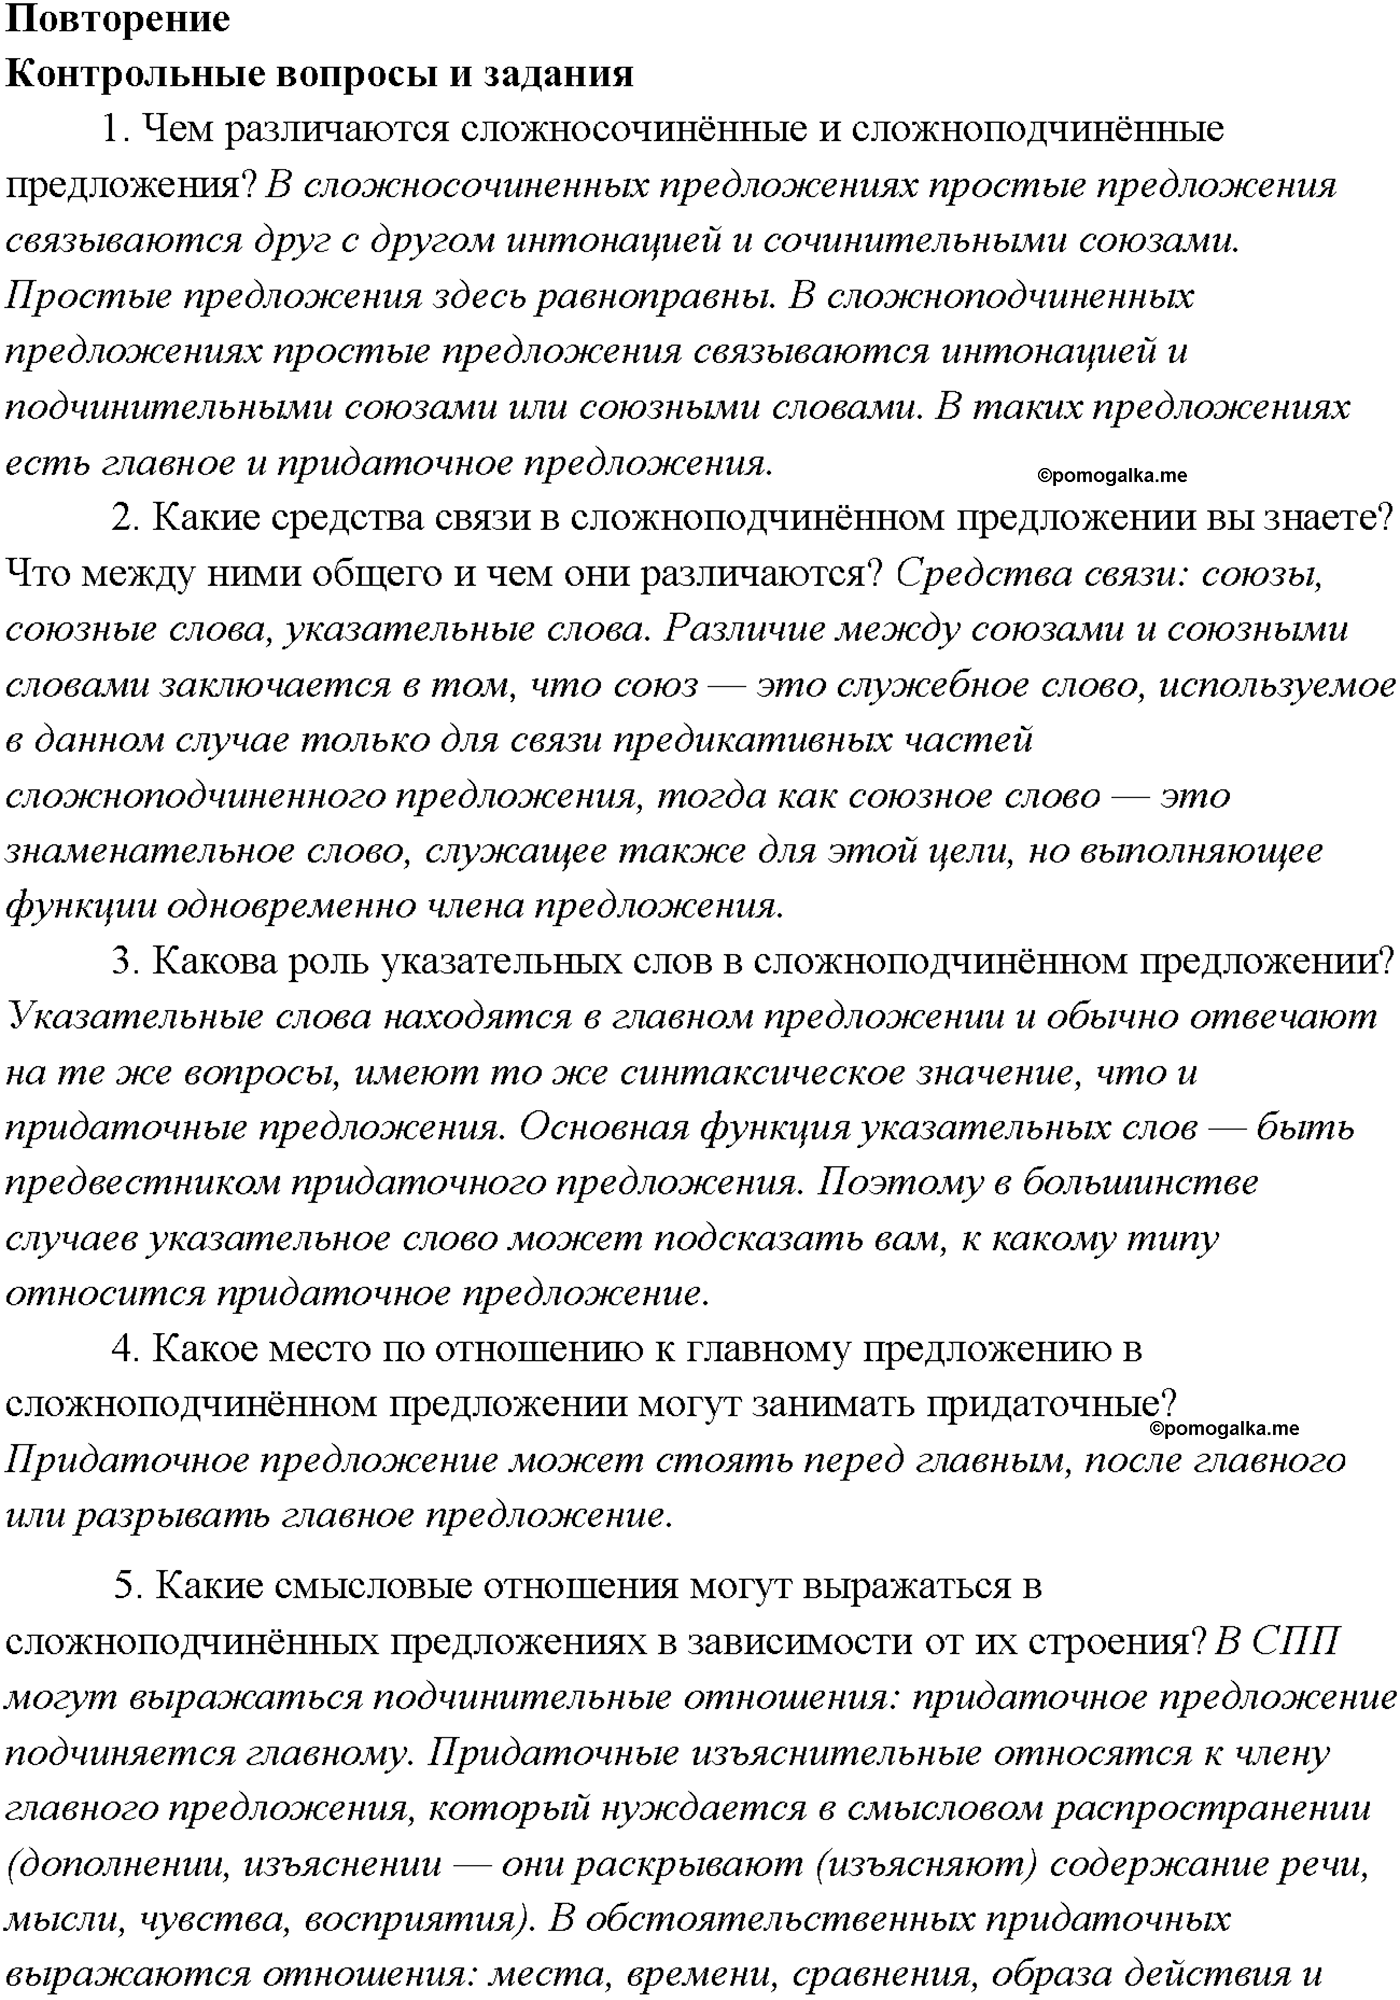 страница 119 Повторение русский язык 9 класс Тростенцова 2018 год